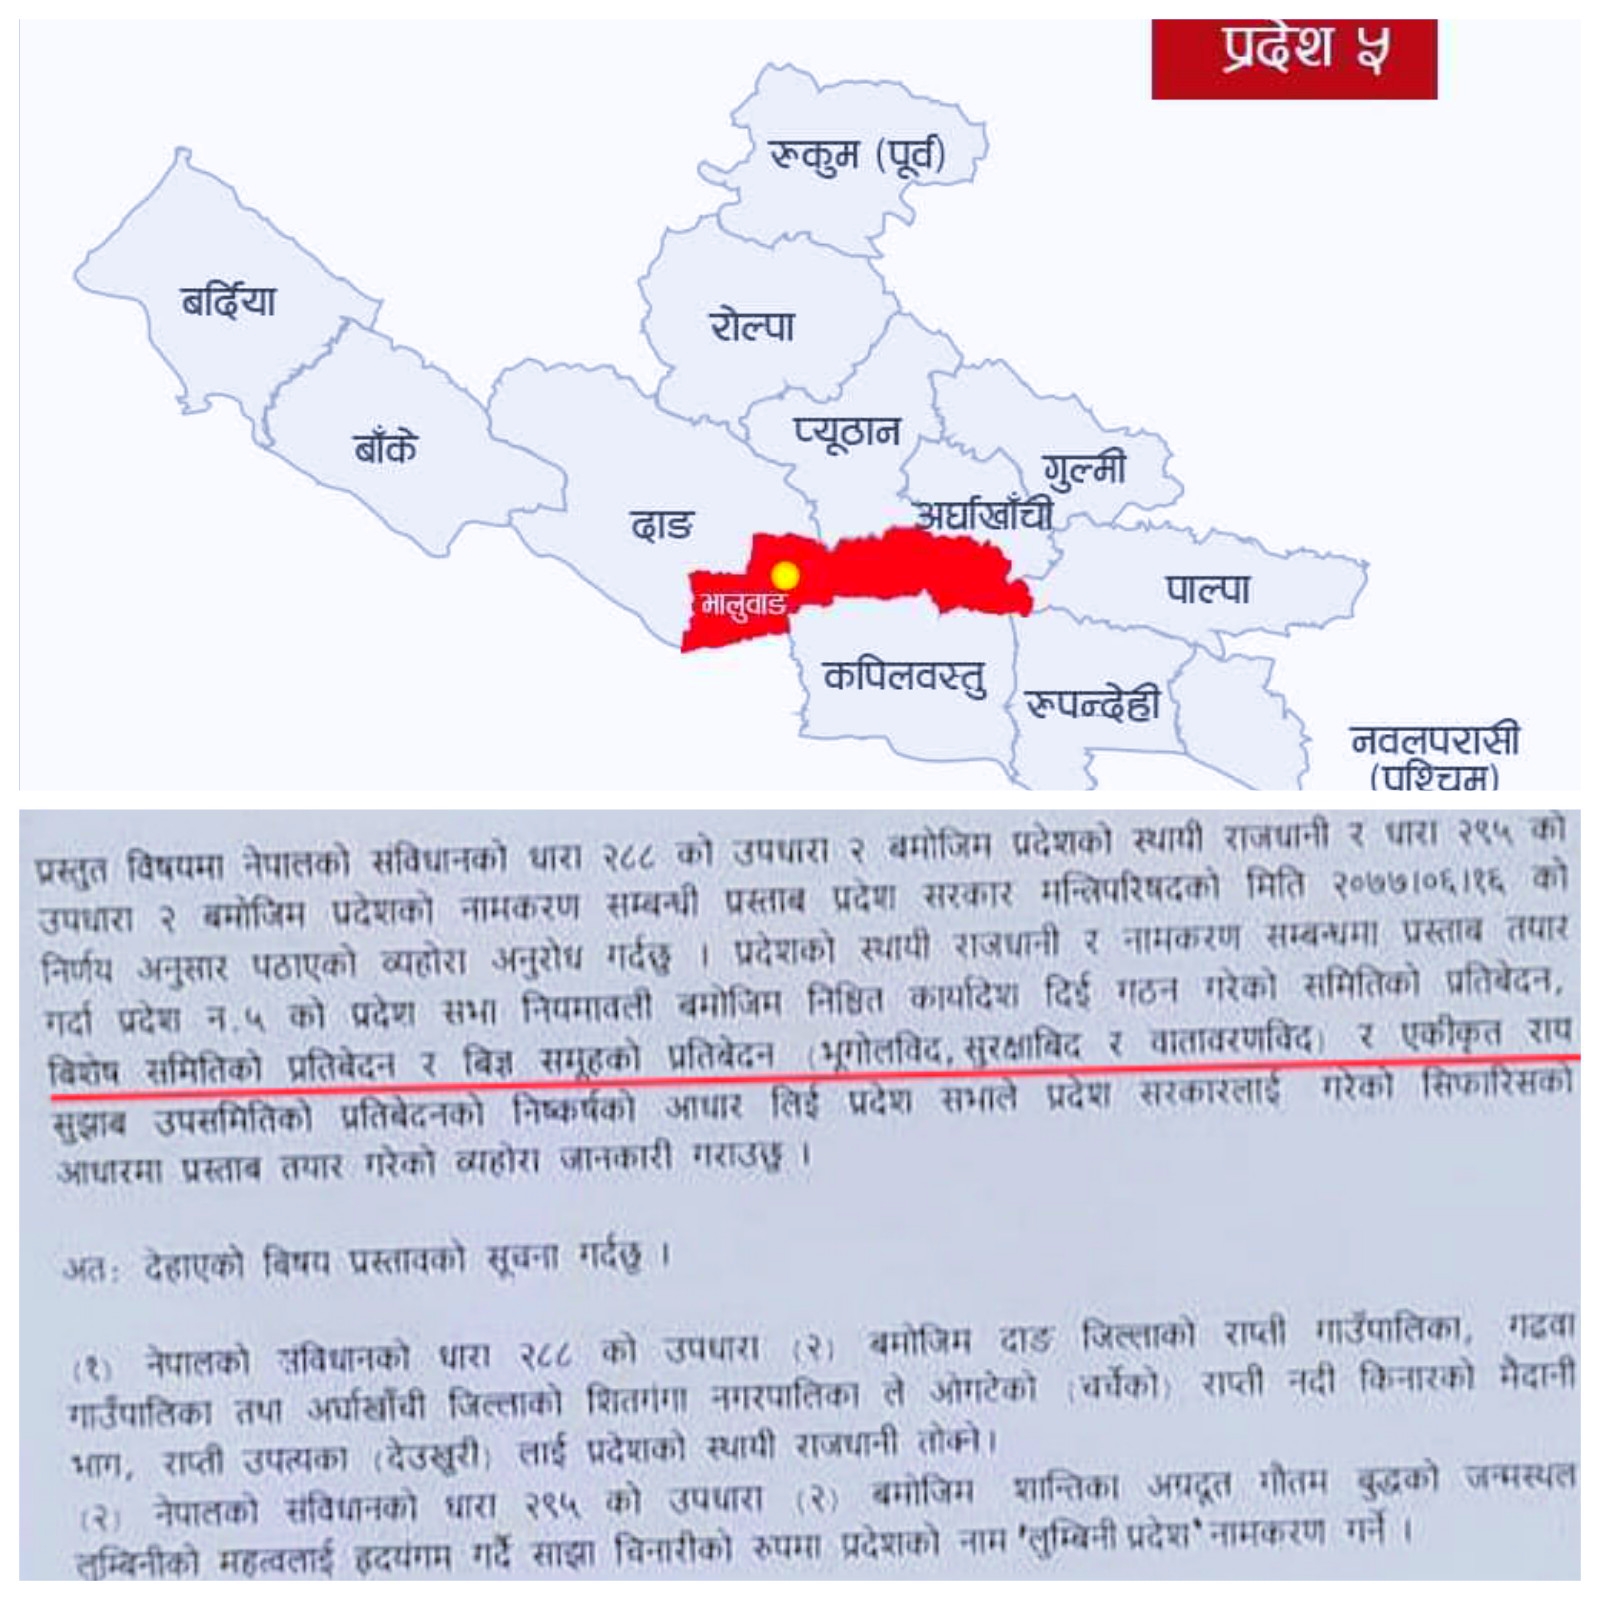 प्रदेश नम्बर ५ को नाम लुम्बिनी र प्रशासनिक केन्द्र भालुबाङ दुई तिहाई बहुमतबाट पास